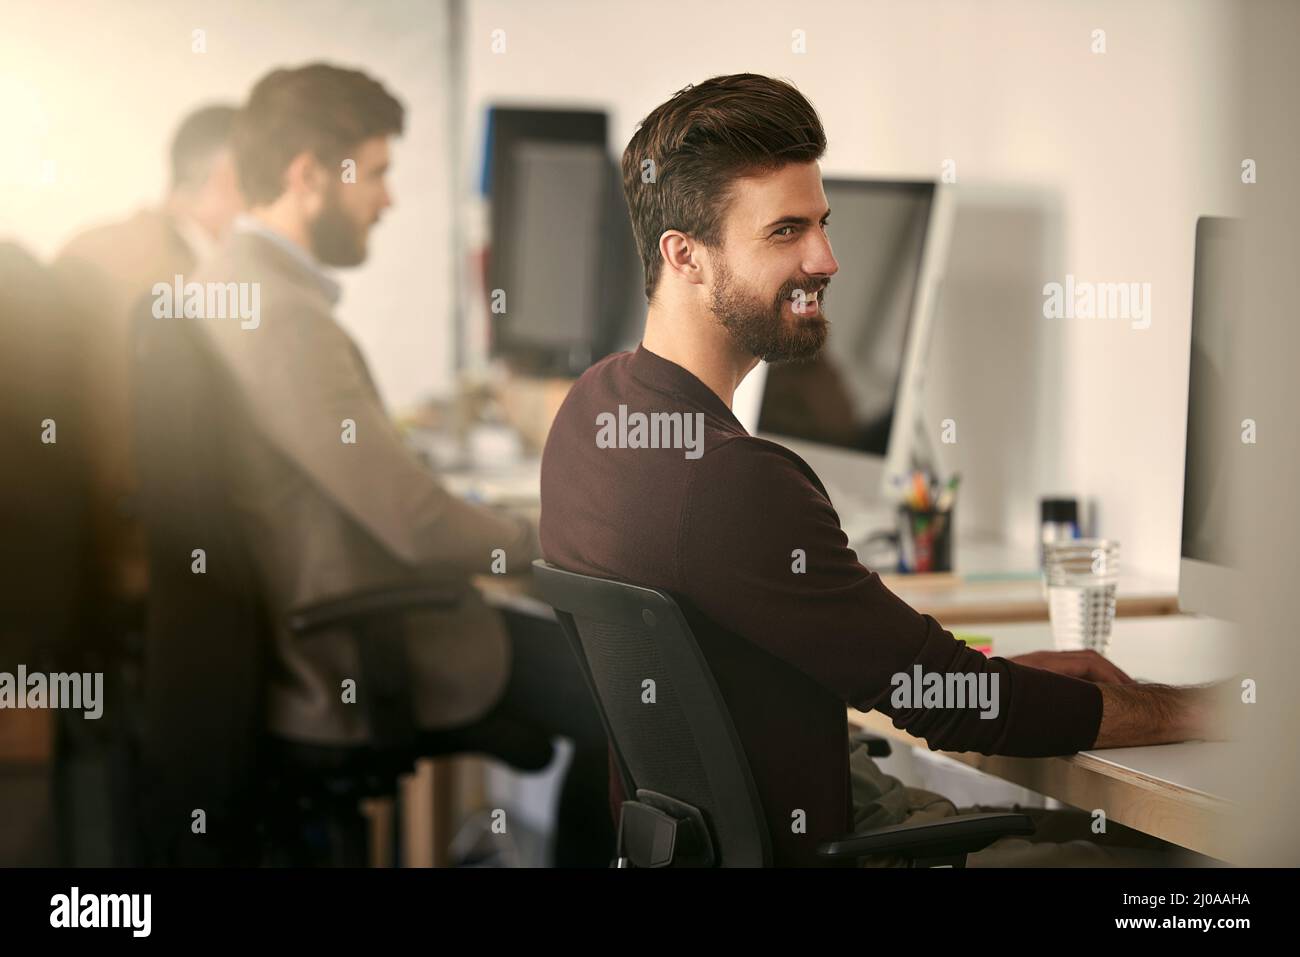 Arbeite härter als du es gestern glaubst. Aufnahme einer Gruppe von Designern, die an ihren Computern arbeiten. Stockfoto